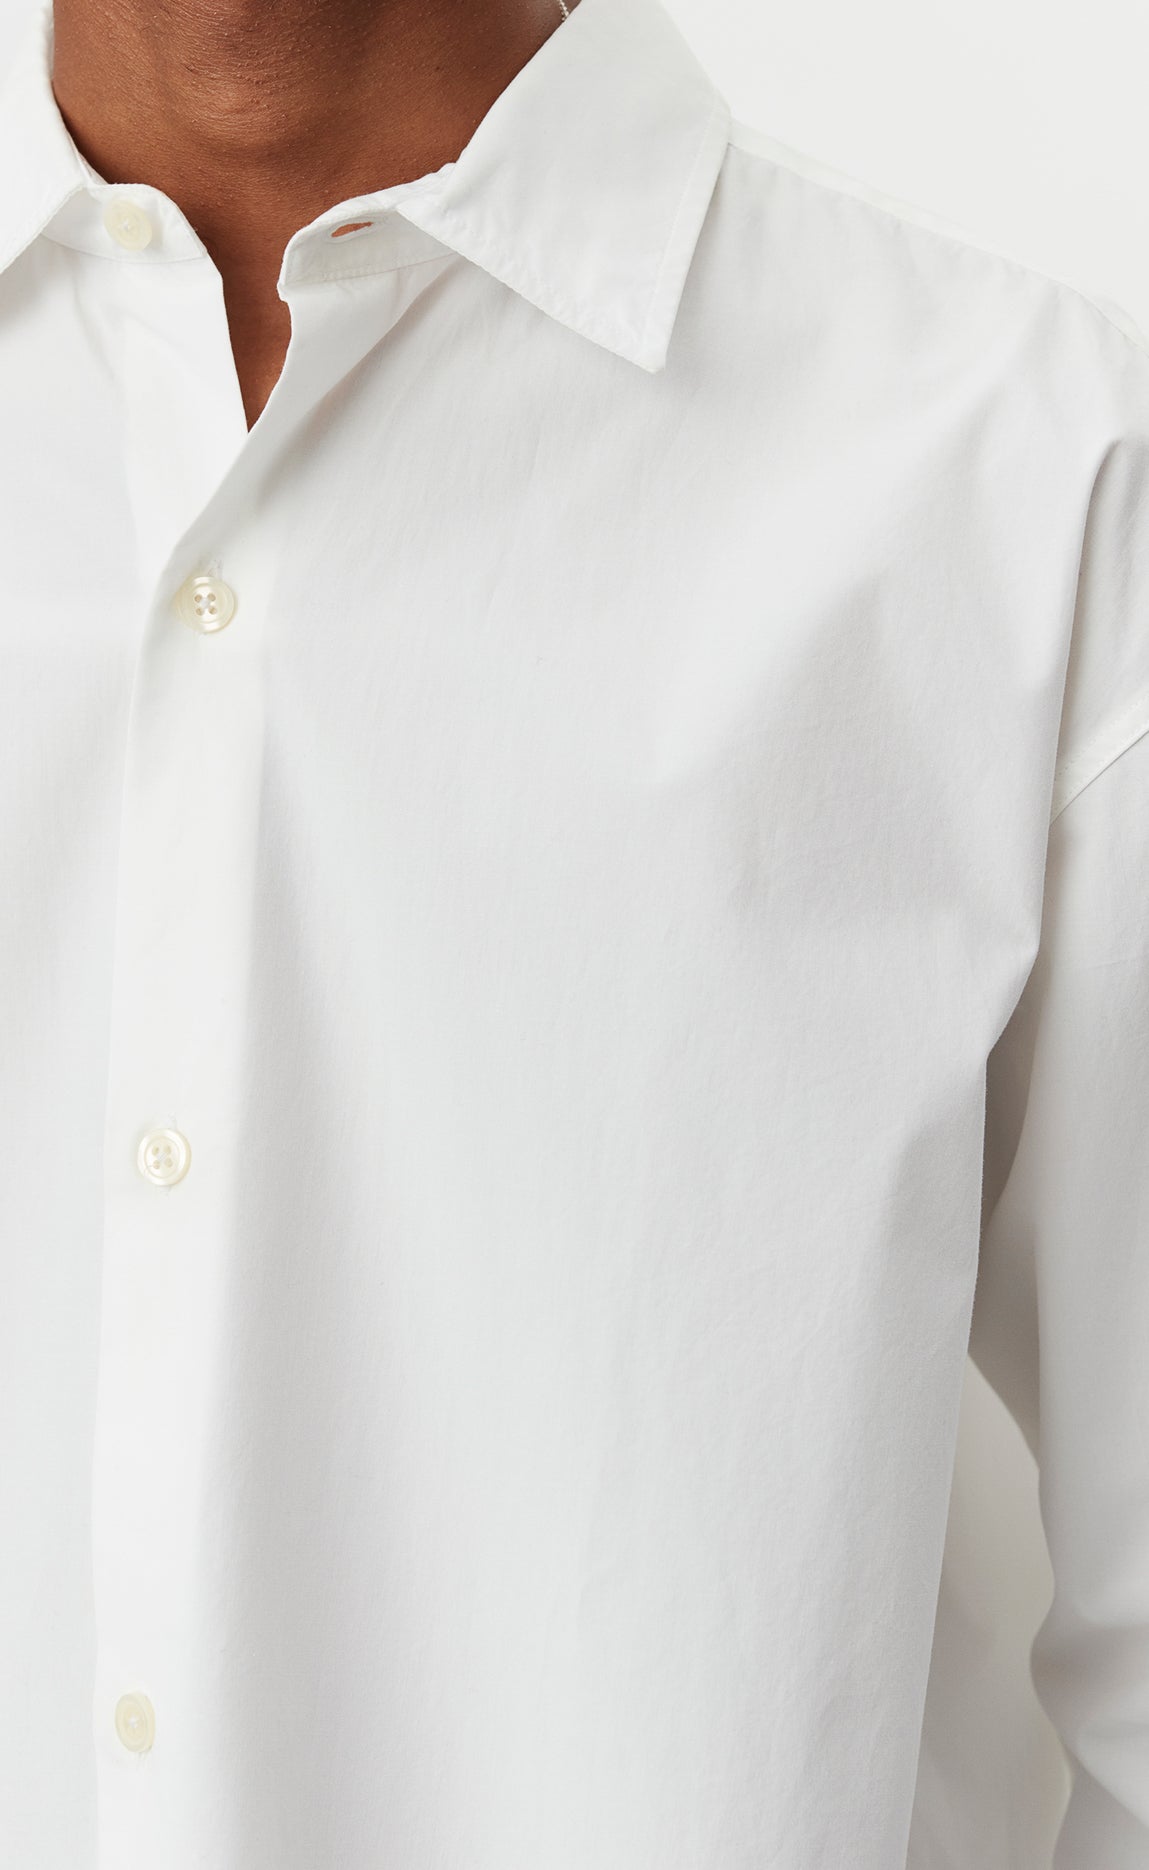 Generous Shirt - White Poplin